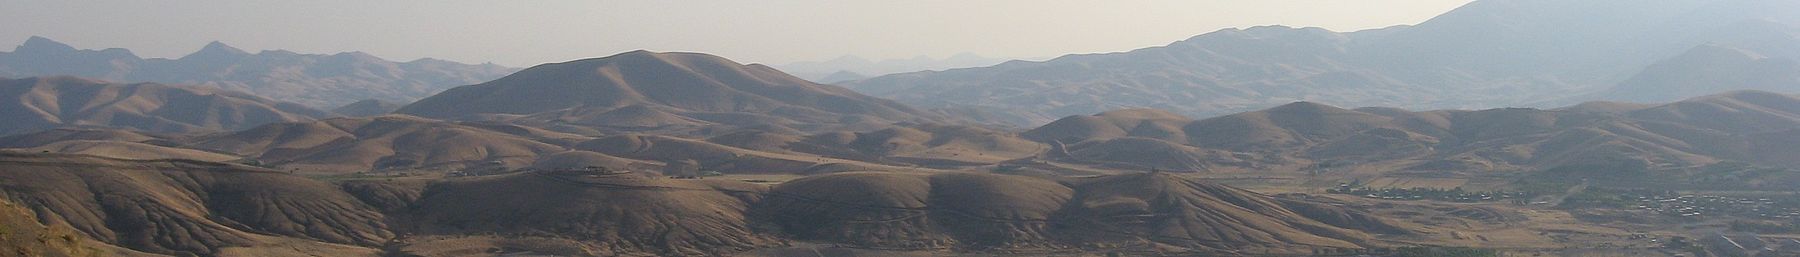 WV बैनर कुर्दिस्तान प्रांत सानंदाज के आसपास पर्वत.jpg